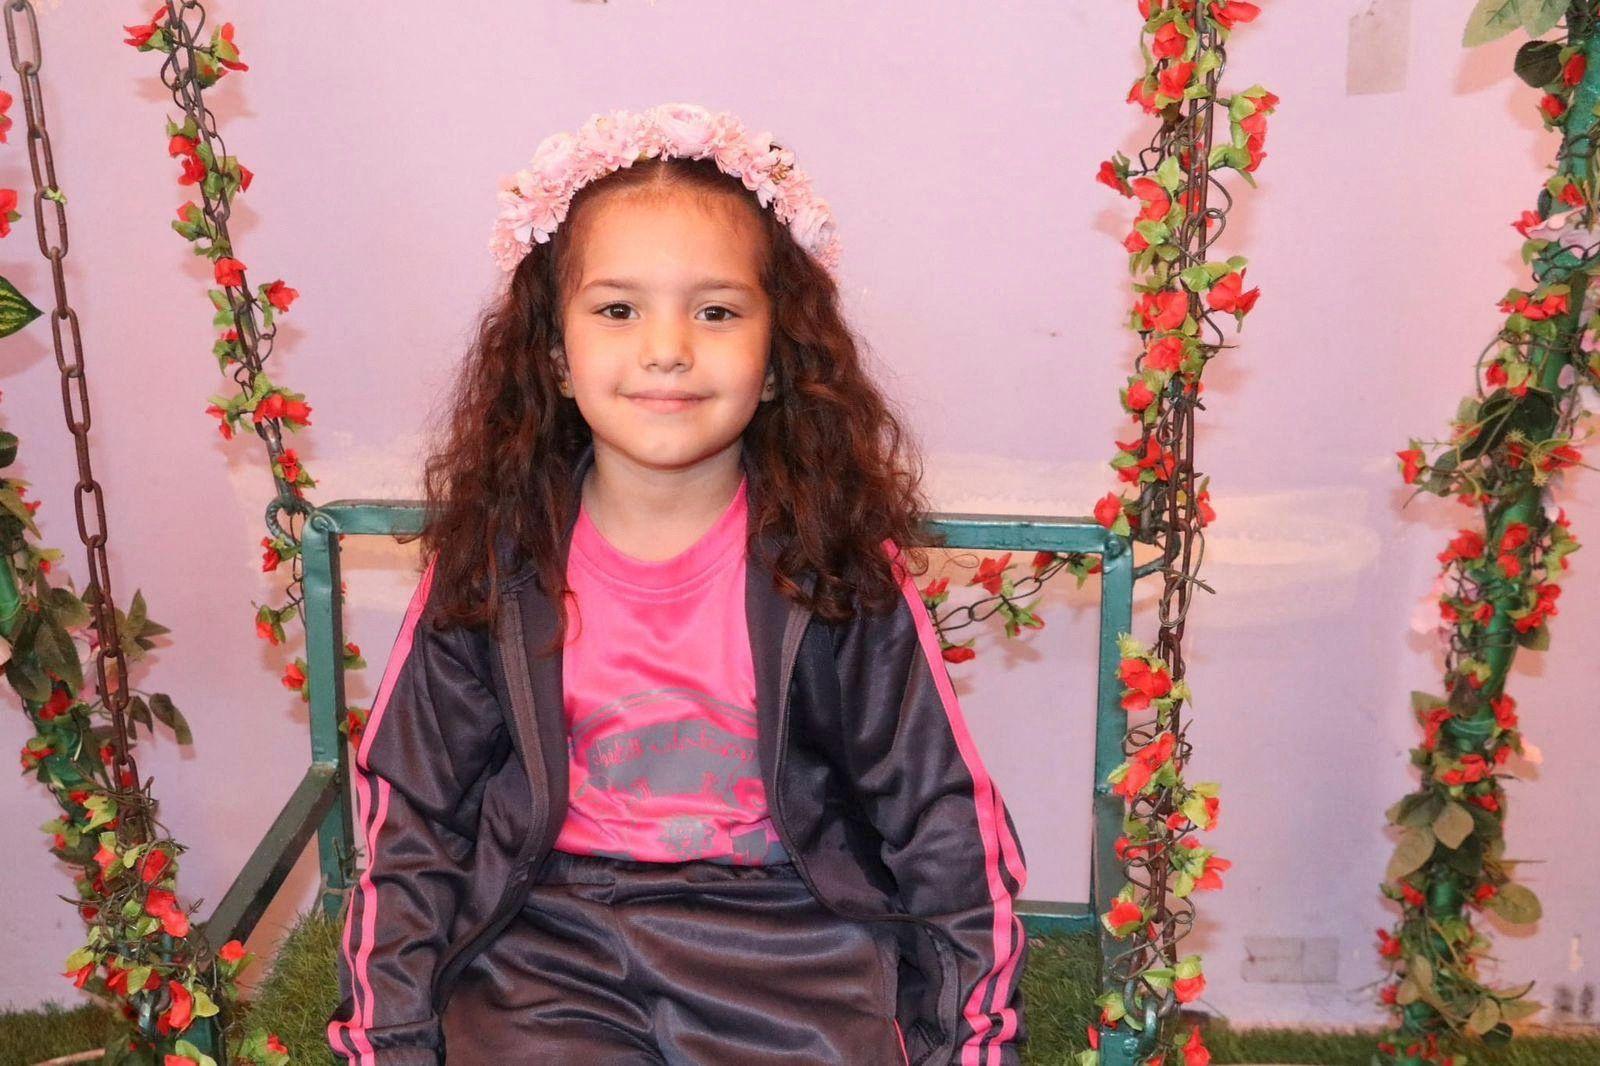 palestina de 6 anos que estava desaparecida após implorar por socorro é encontrada morta